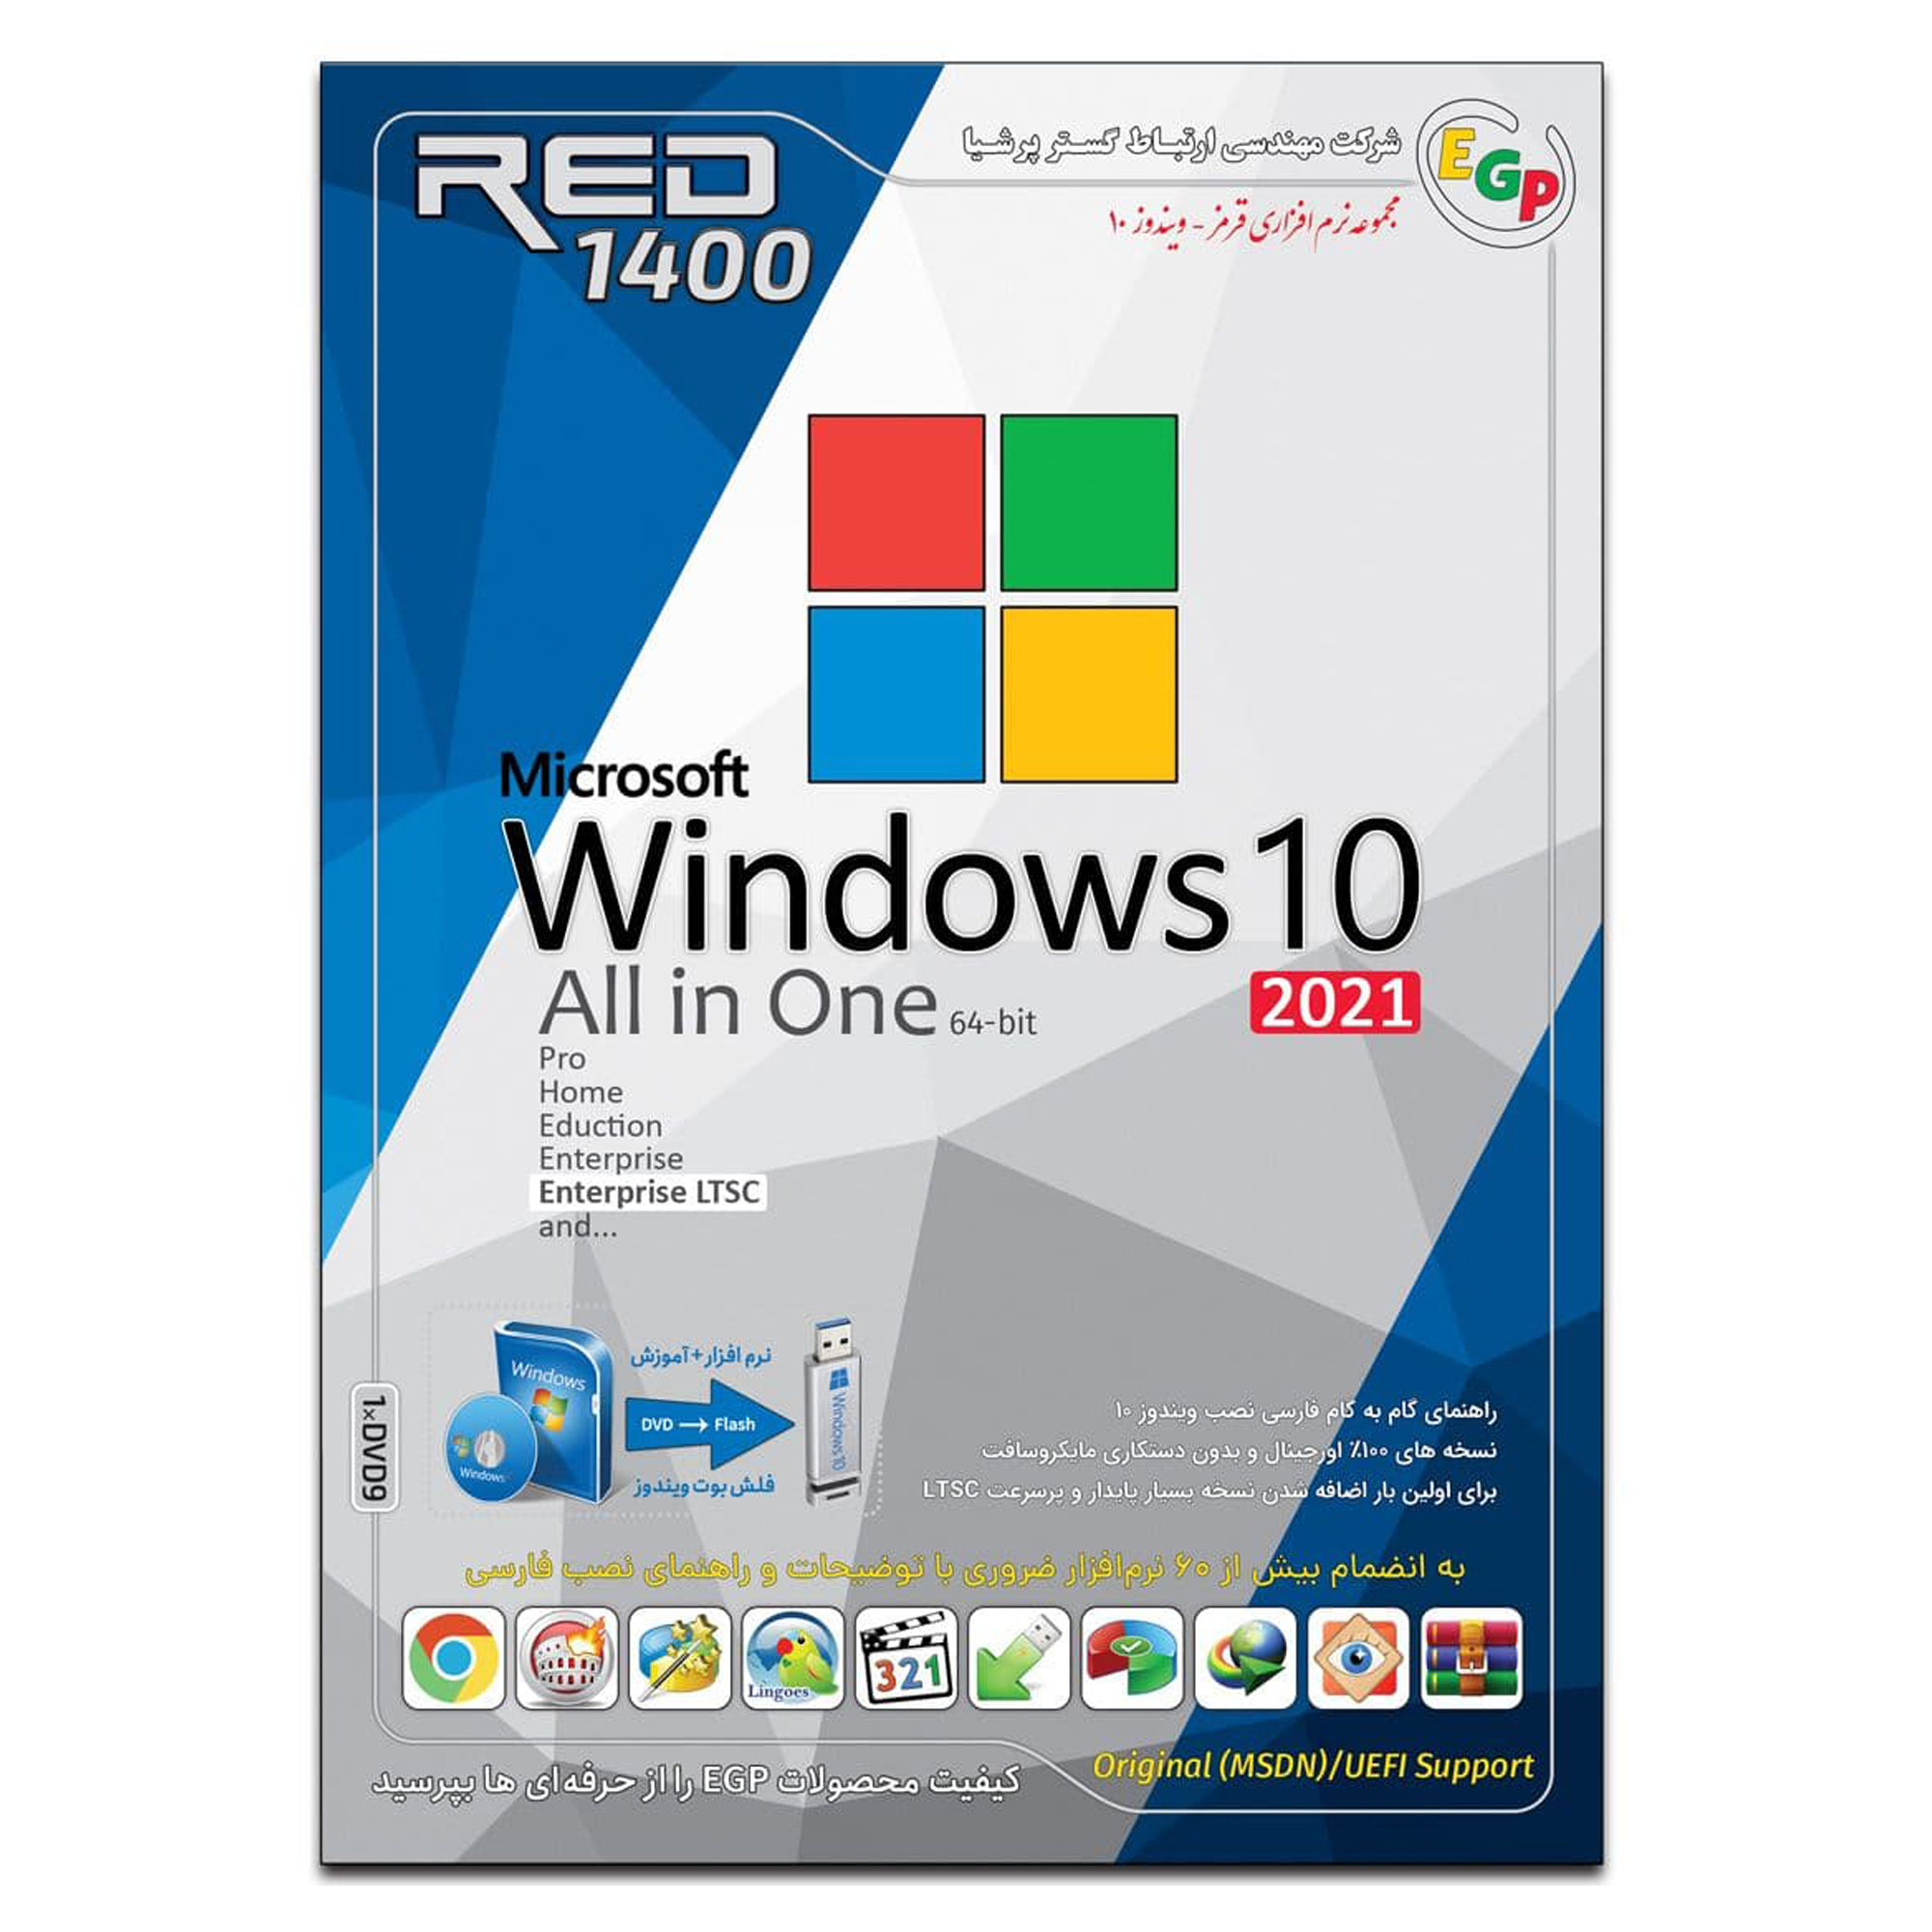 سیستم عامل Windows 10 All in One 2021 نشر ارتباط گستر پرشیا